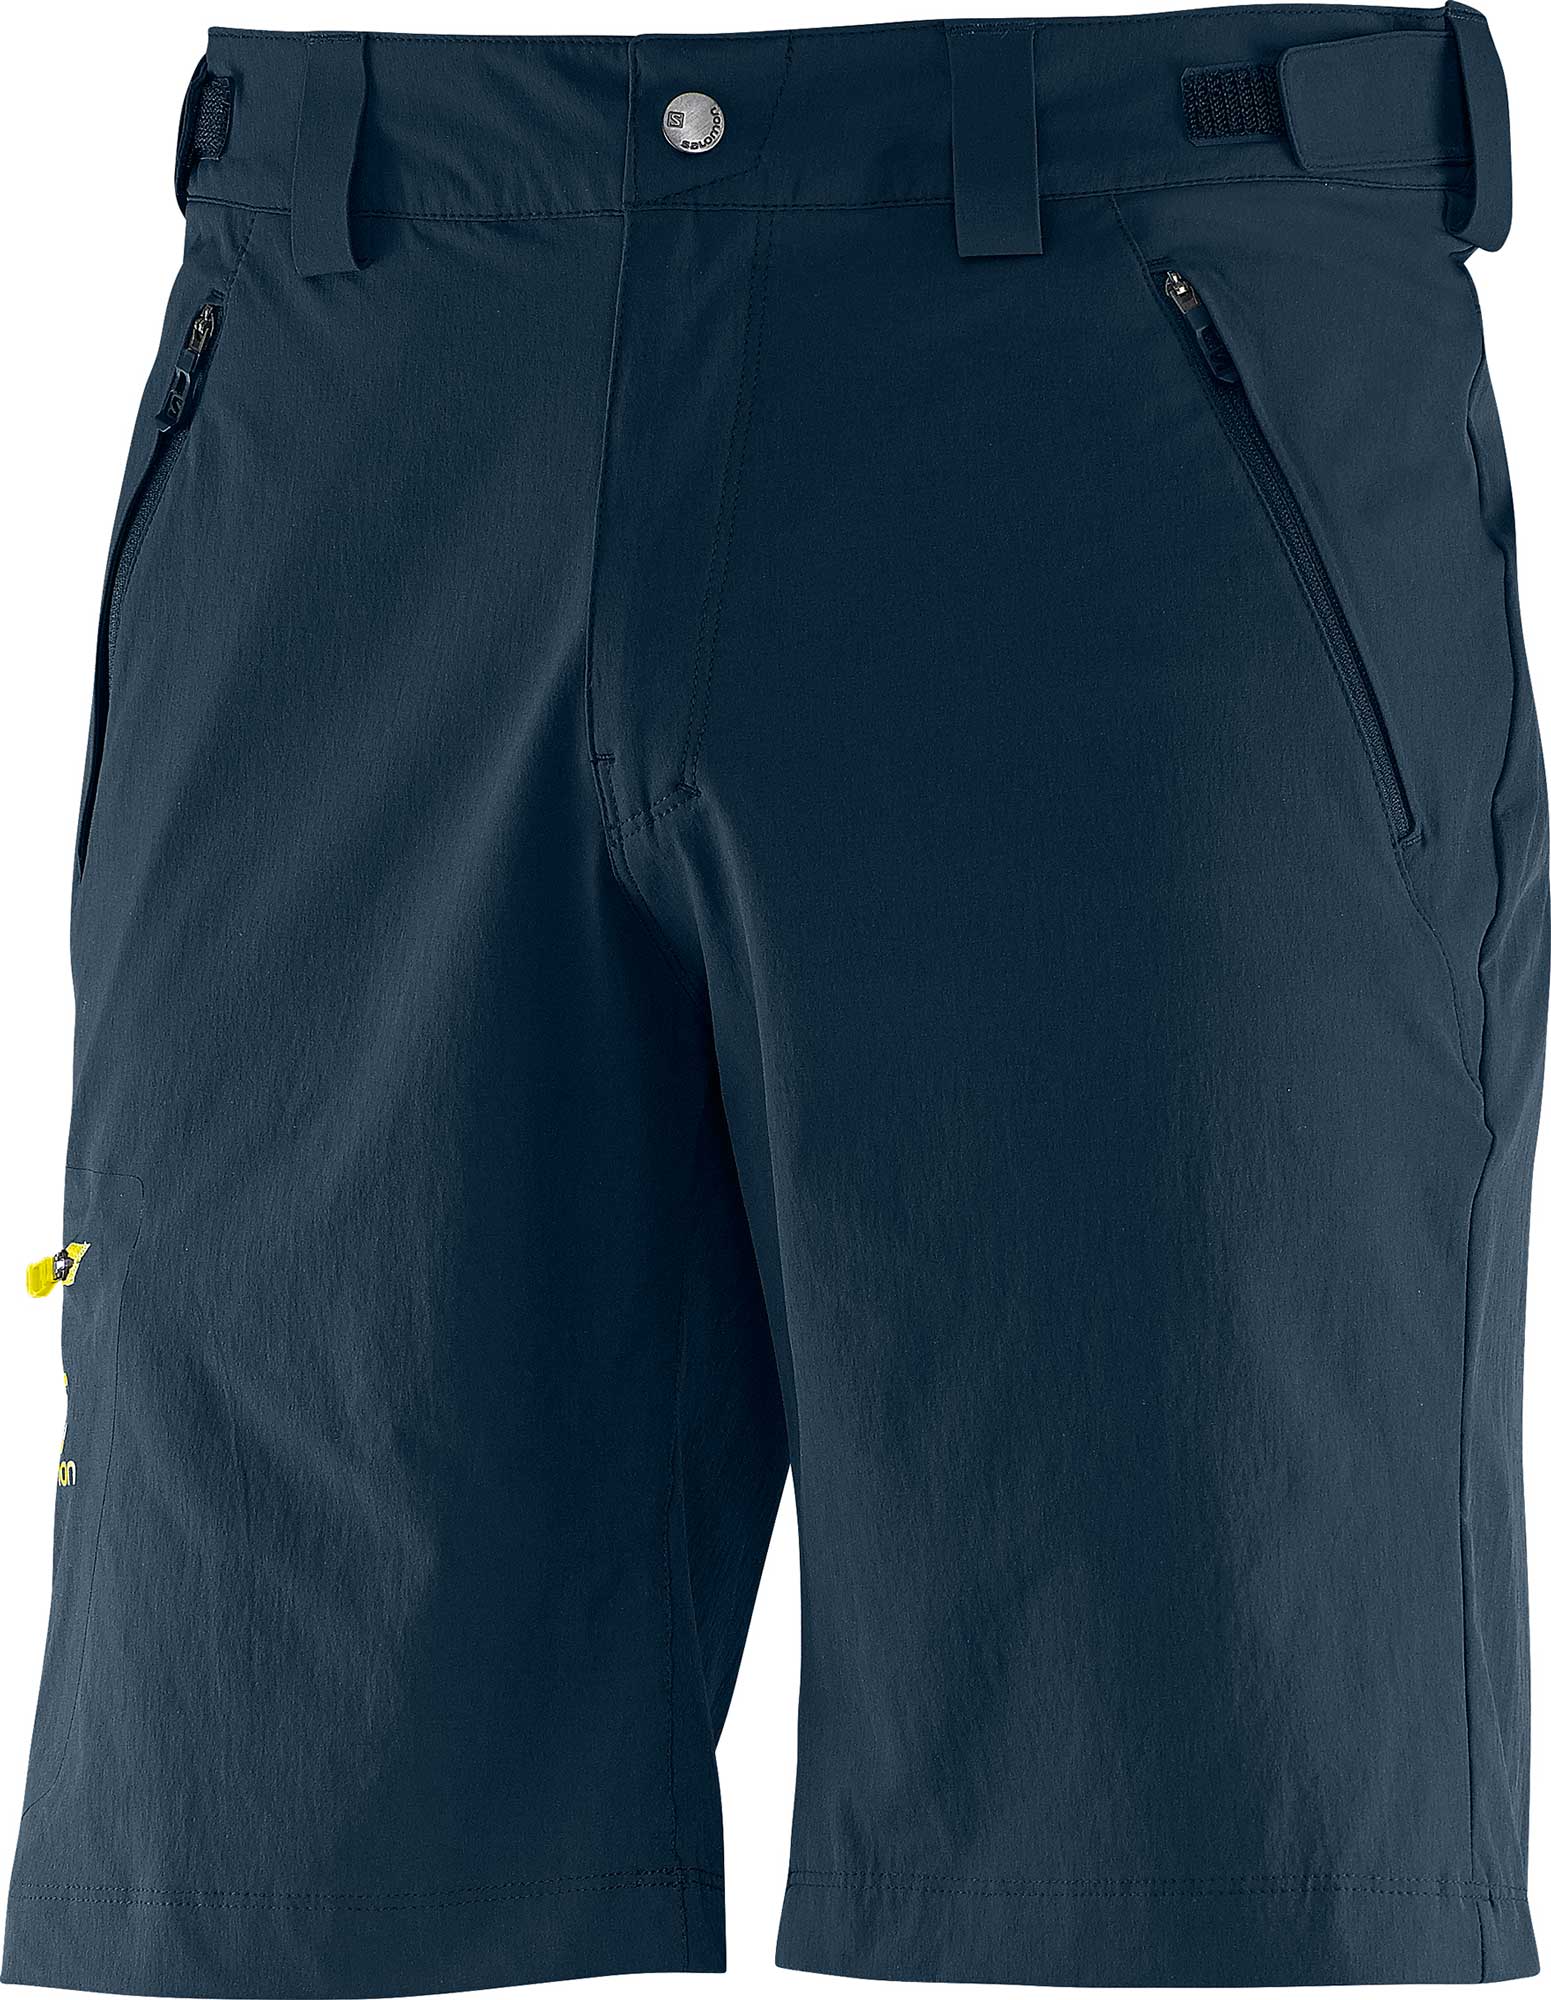 Men’s outdoor shorts